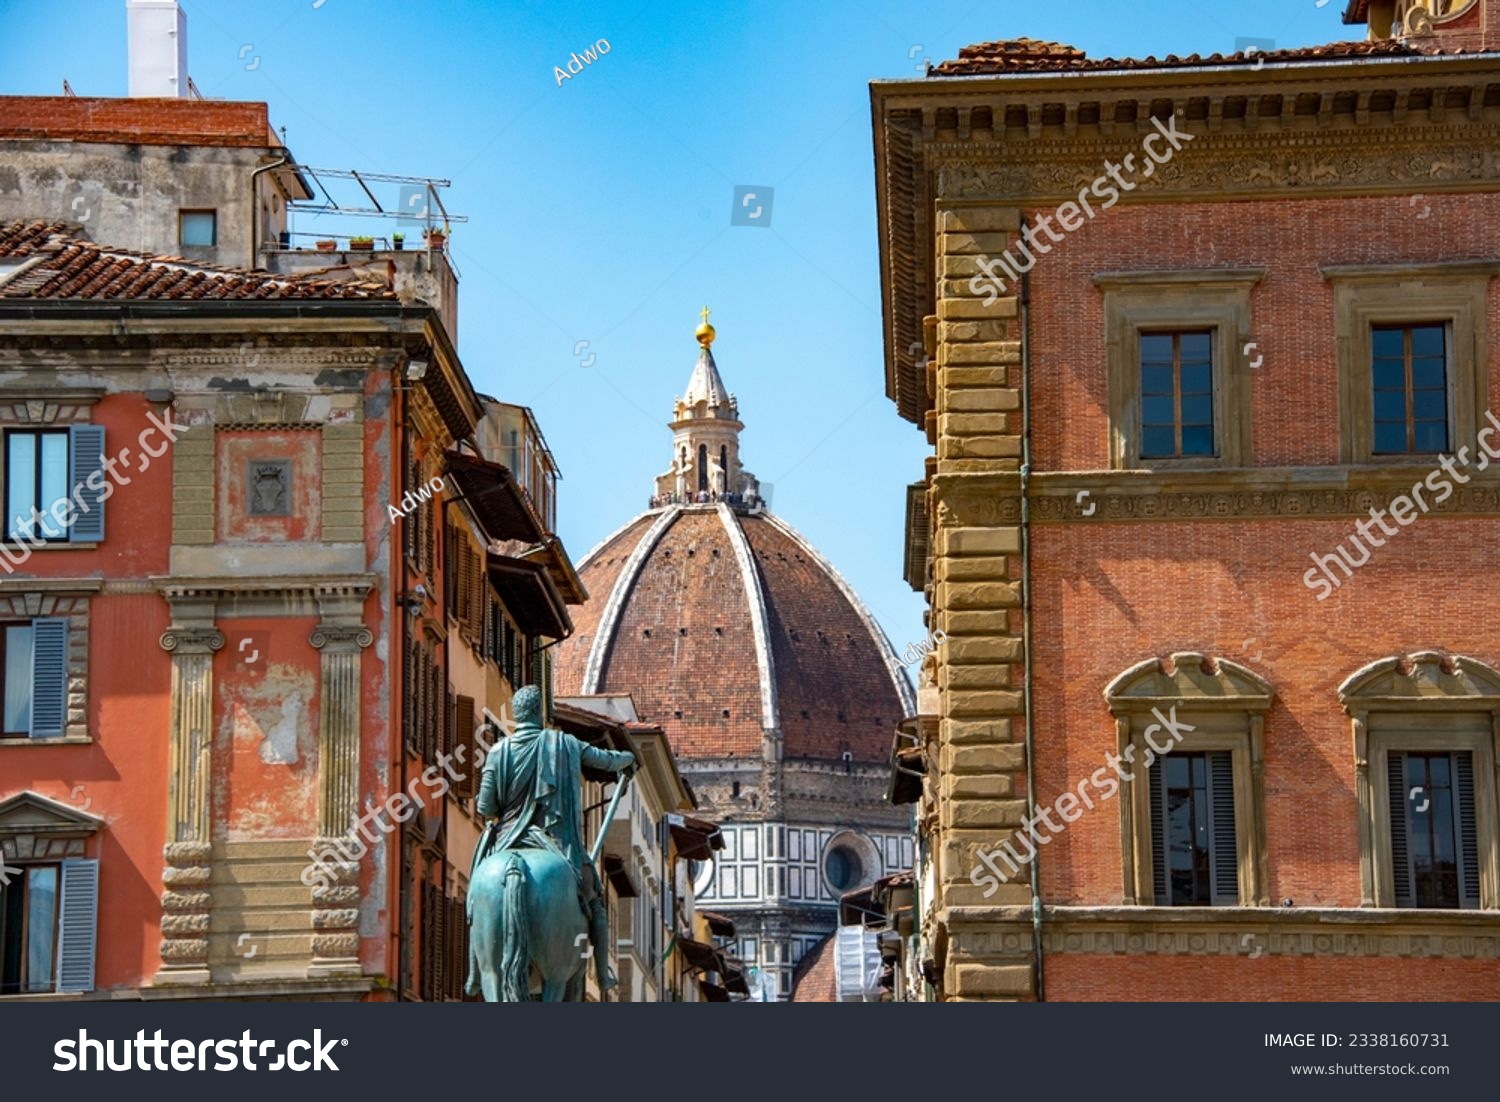 Square of Piazza della Santissima Annunziata - Florence - Italy #2338160731